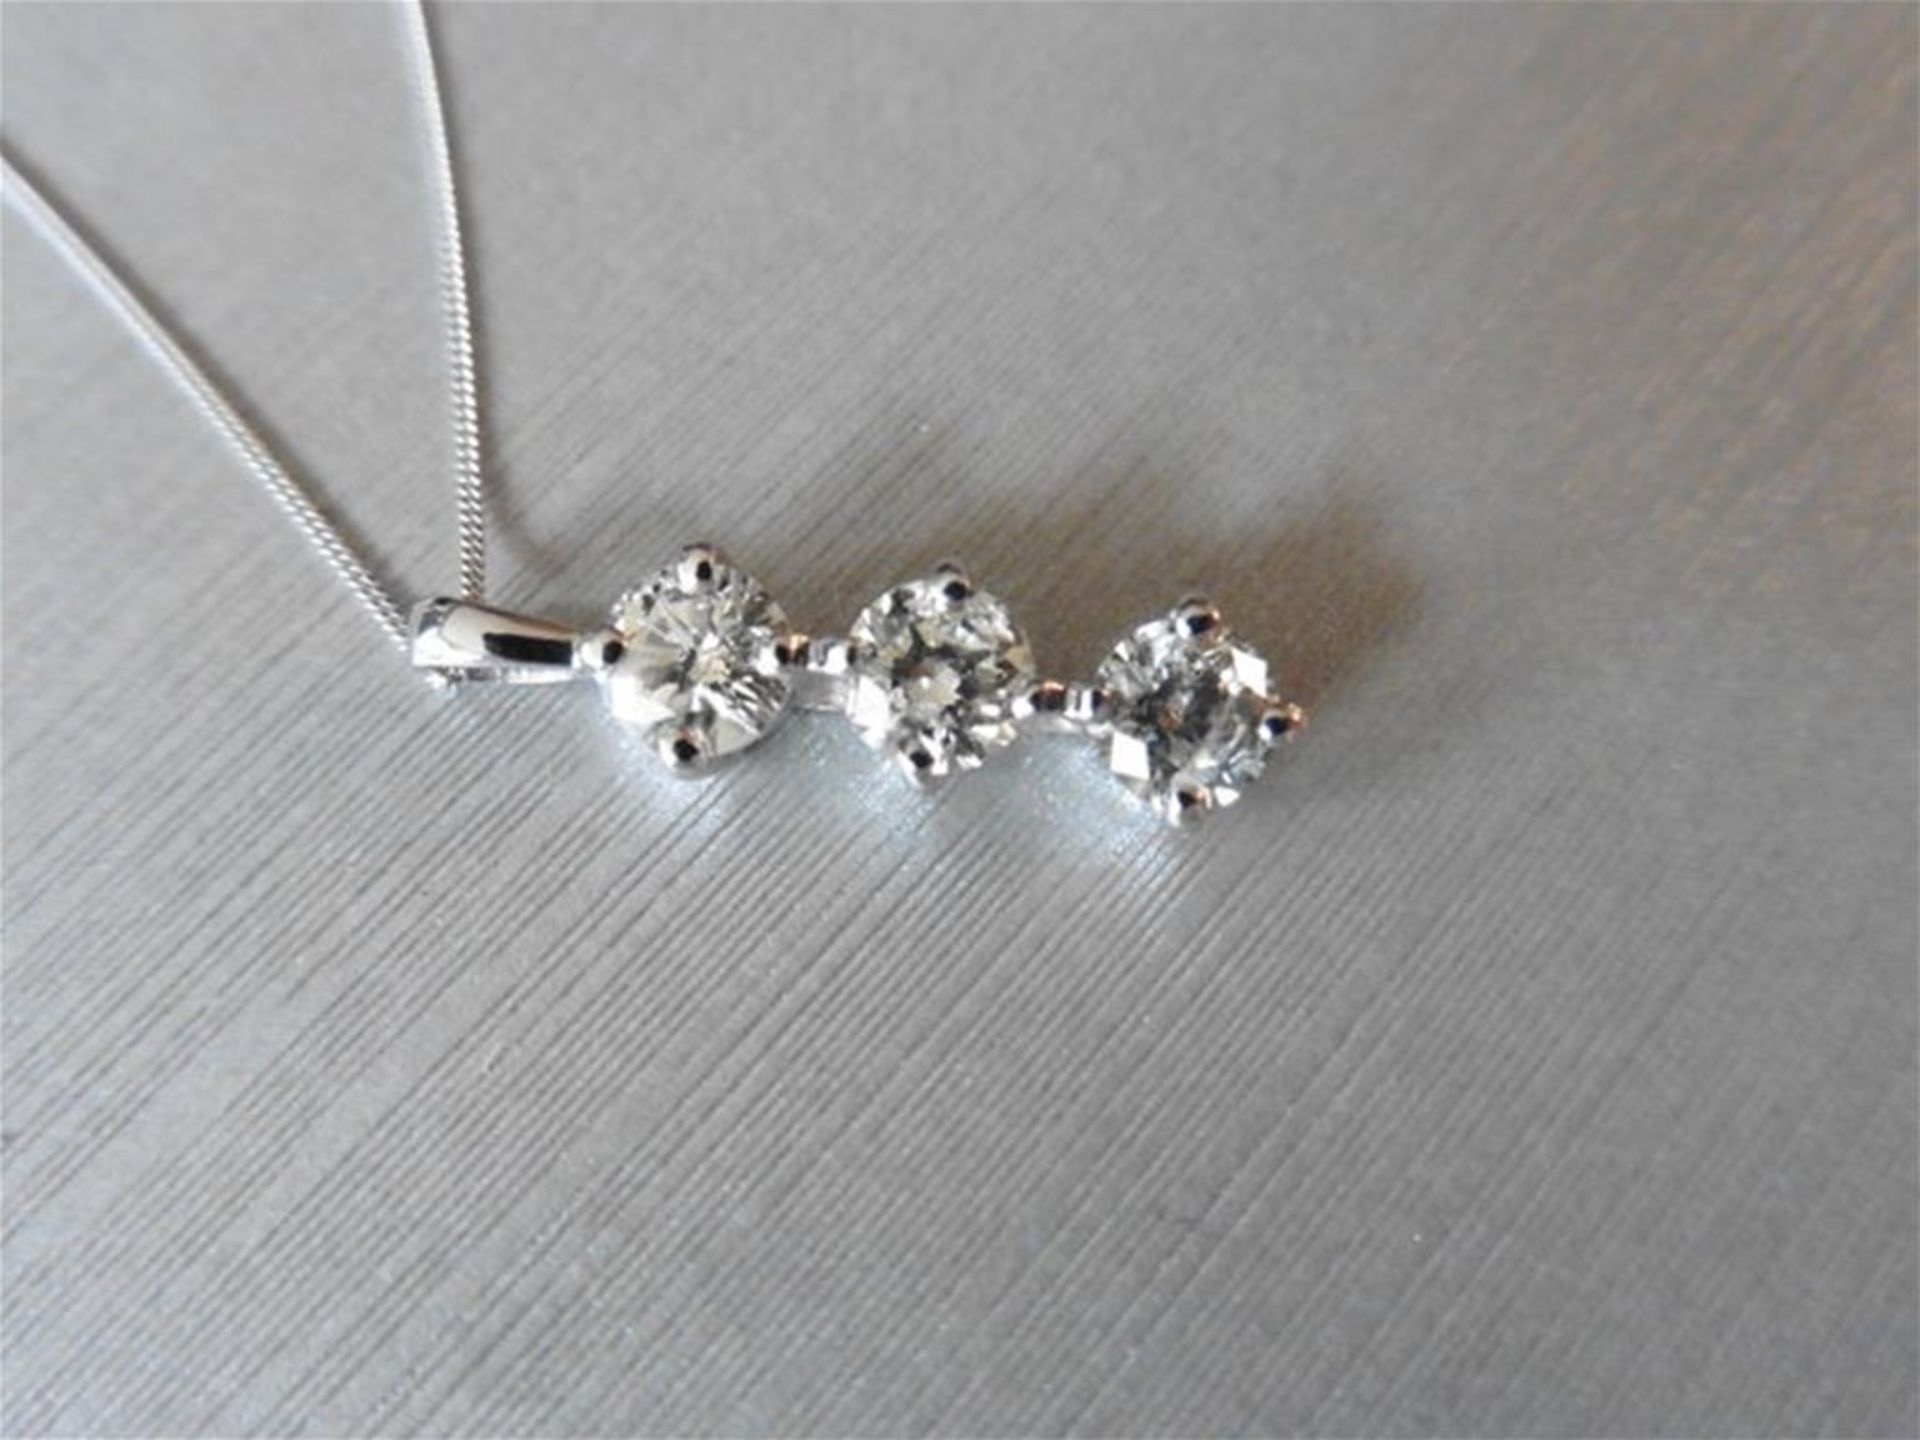 2.10ct diamond trilogy pendant. 3 brilliant cut diamonds I colour, I1 clarity. in 18ct white gold